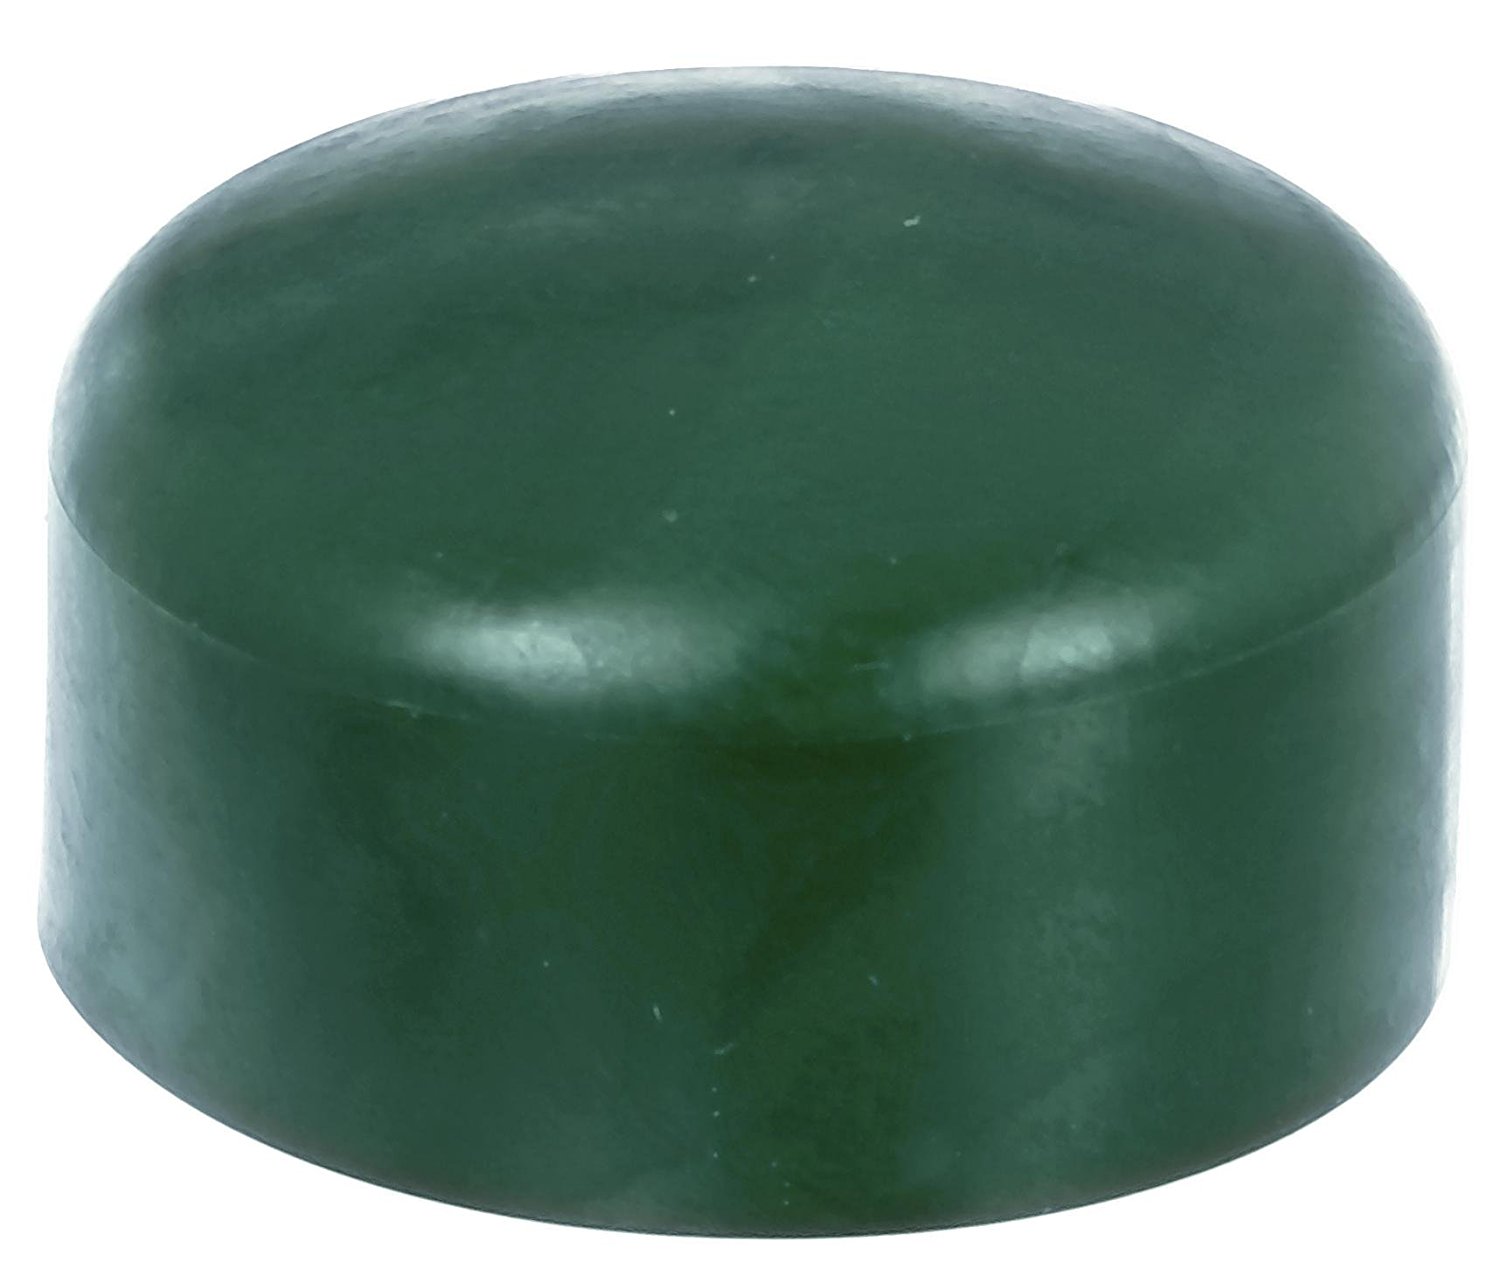 4 x Zaunkappe grün 38-39 mm, Pfostenkappe für runde Metallpfosten, grün, Rohrkappen, Abdeckkappe für